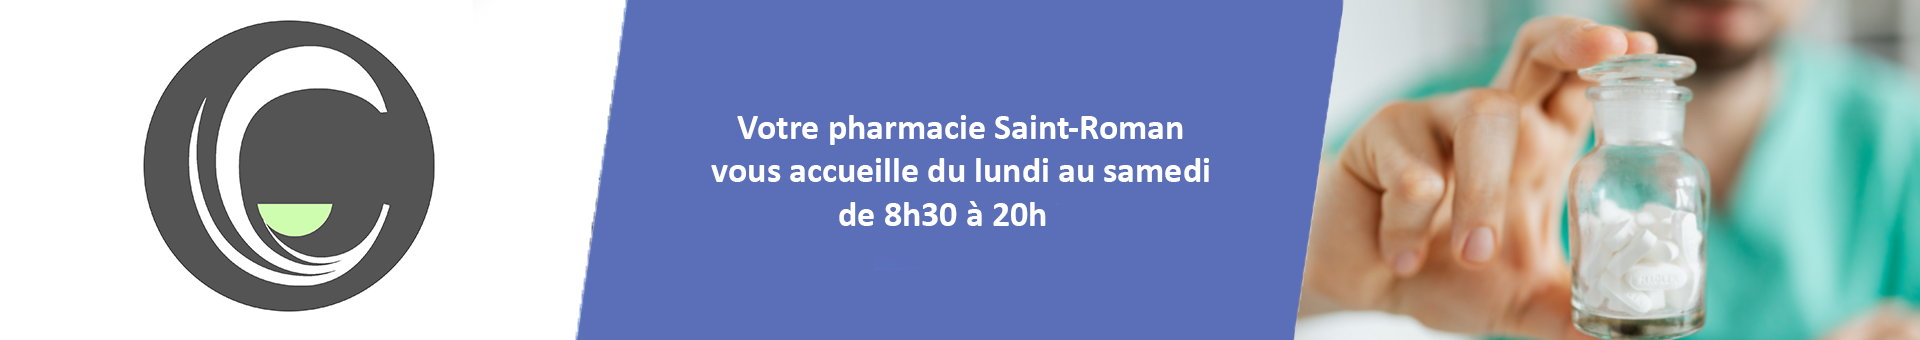 Pharmacie Saint Roman,MENTON